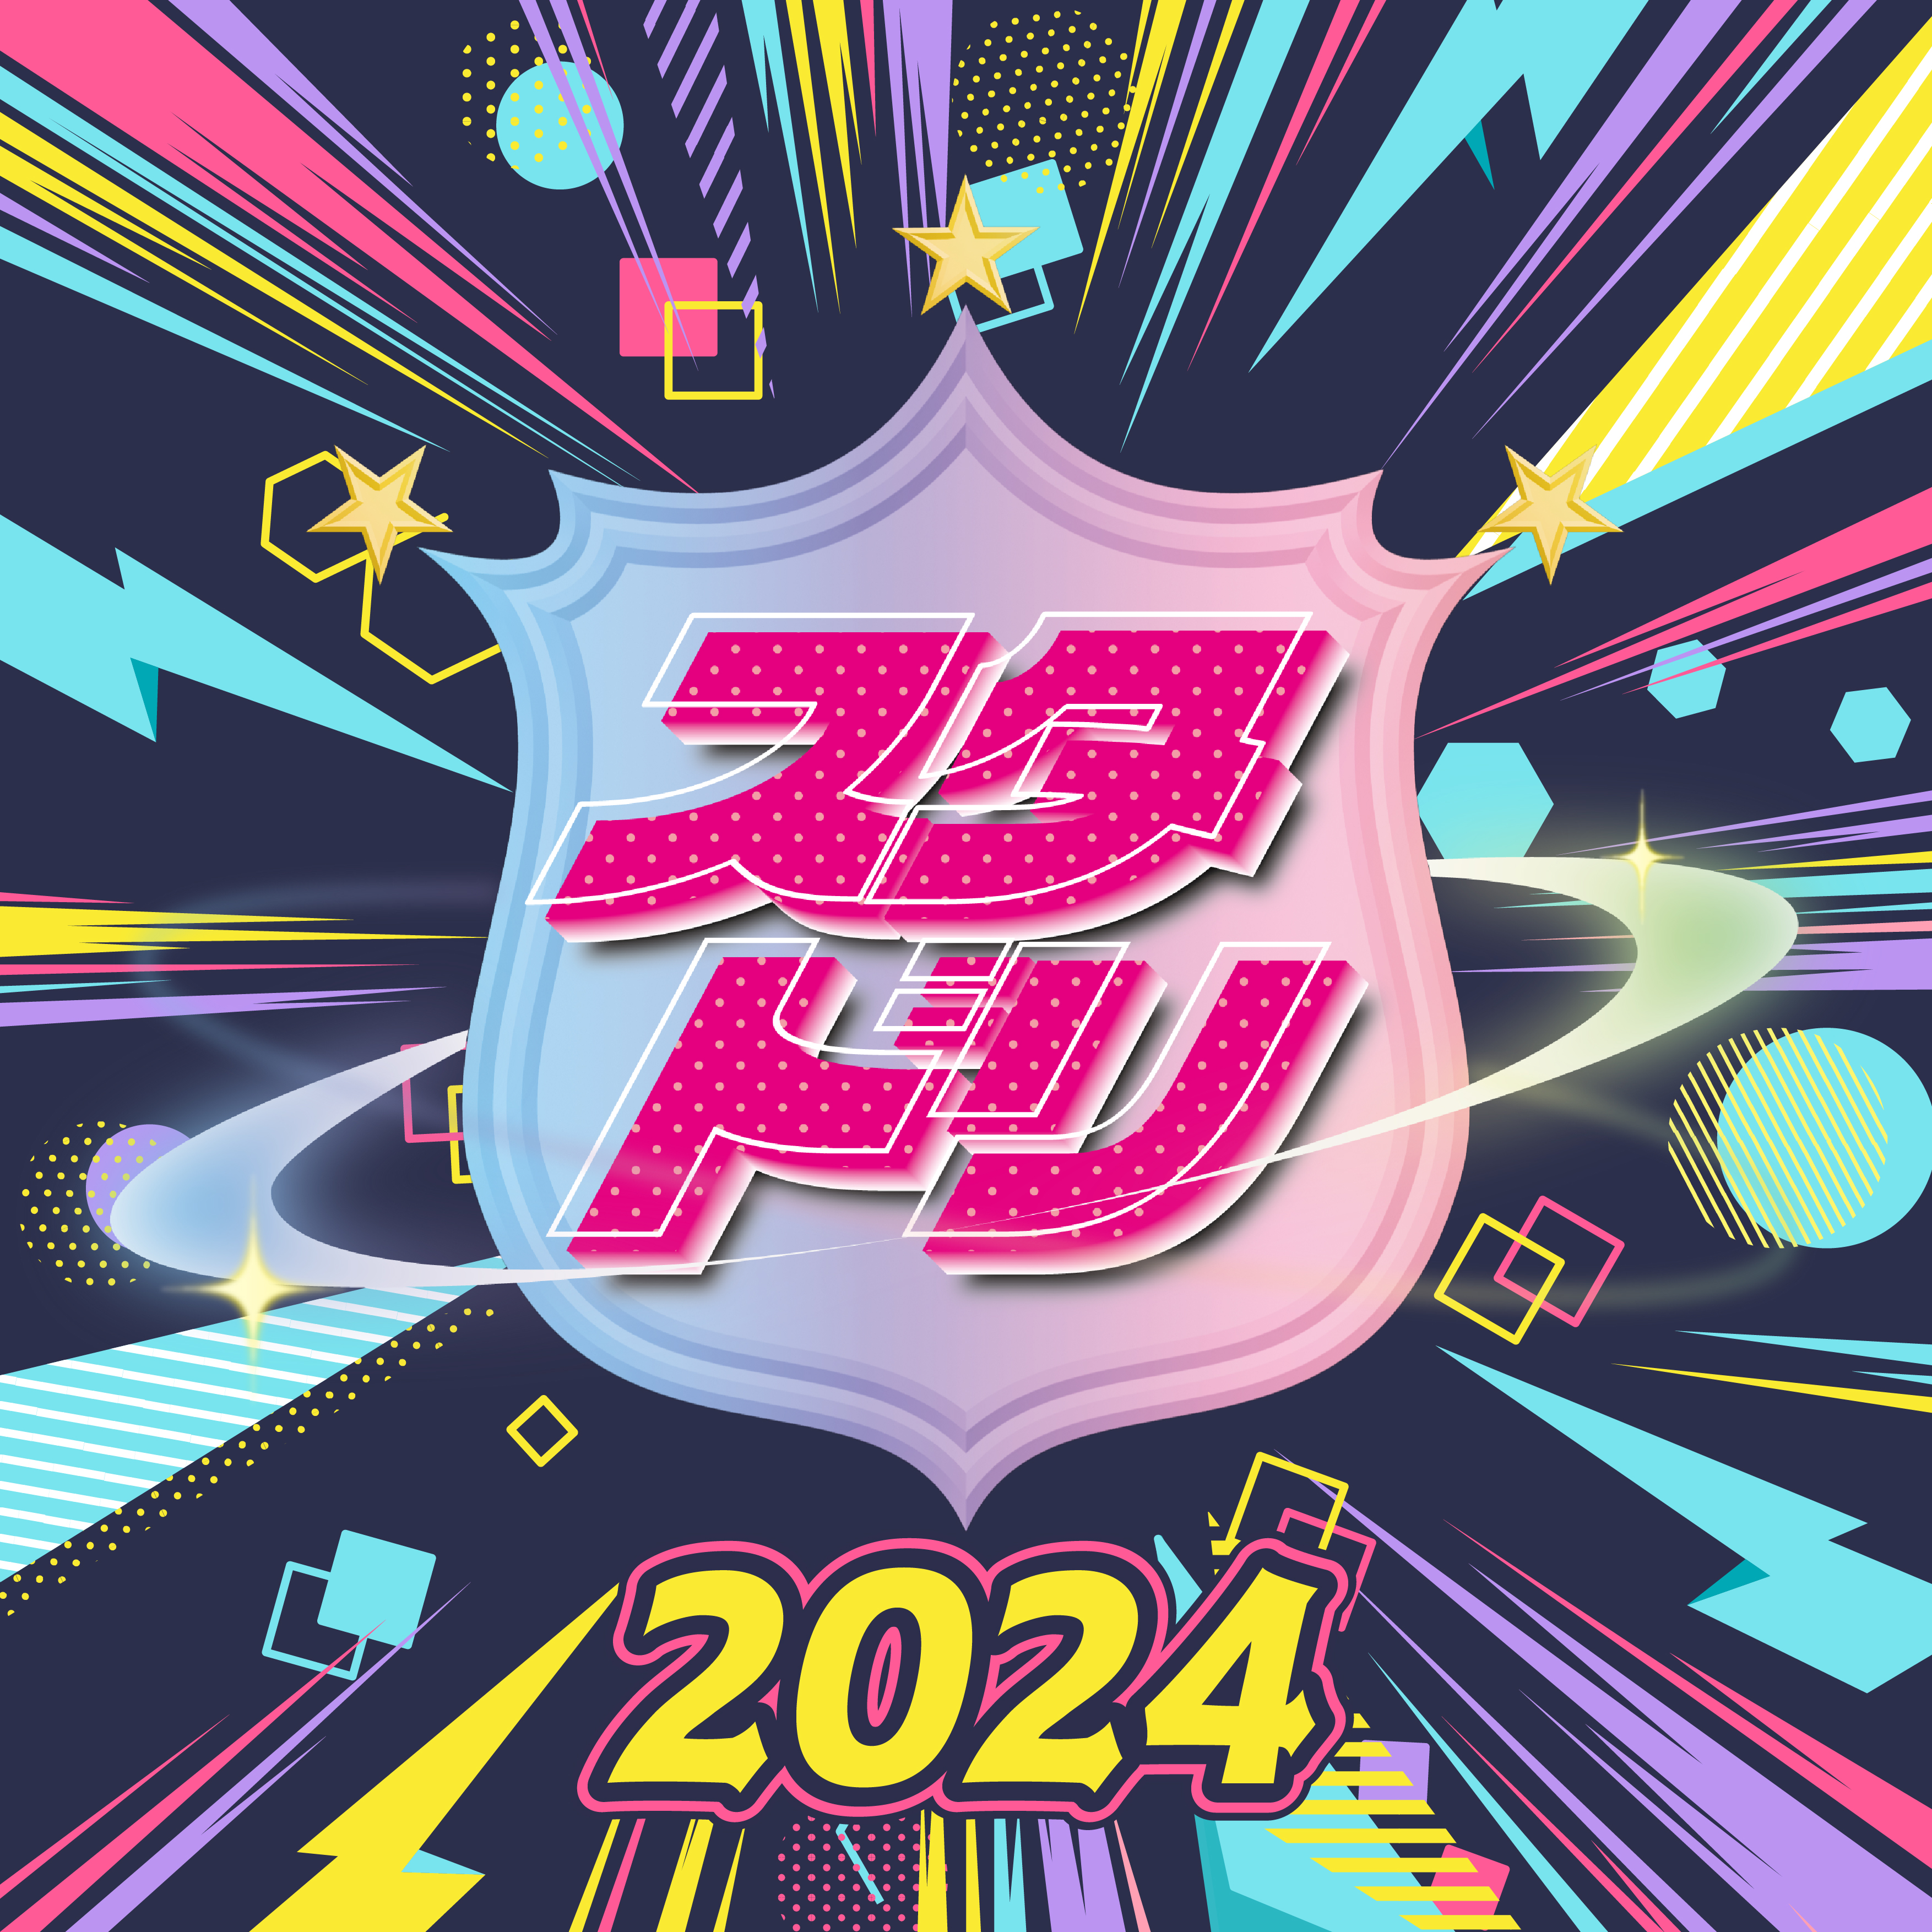 「スター☆ドリームチャレンジ 2024」に、X-girl Stages・XLARGE KIDS・GLAZOSが参加決定！エントリー受付中！